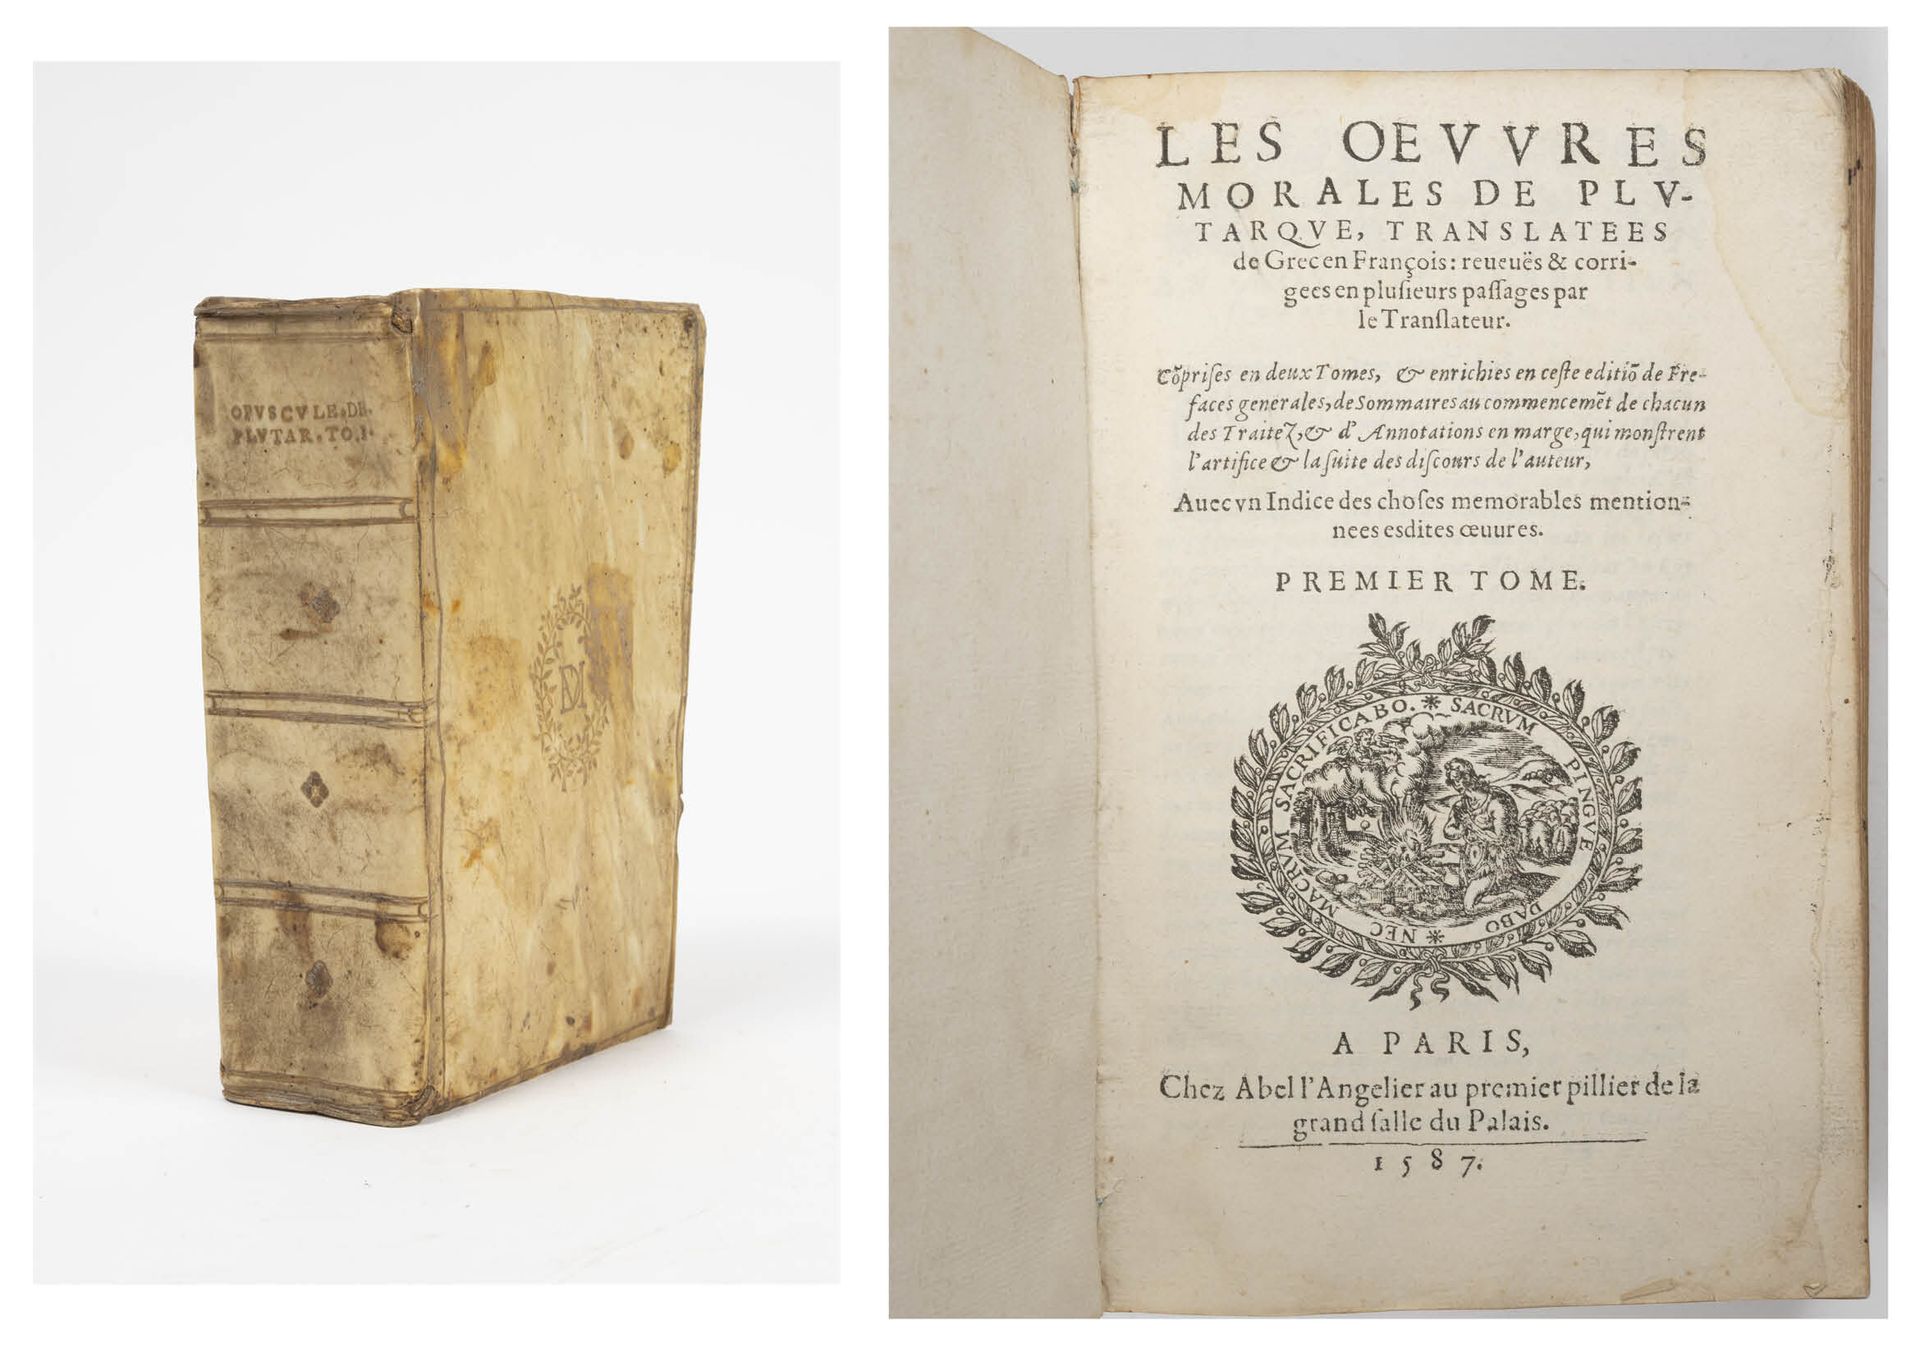 Null 普鲁塔克的道德作品。

第一册。

由Abel l'angelier撰写，巴黎，1587年。

一卷12开本，牛皮纸装订，页面镀金。

使用状况。未作&hellip;